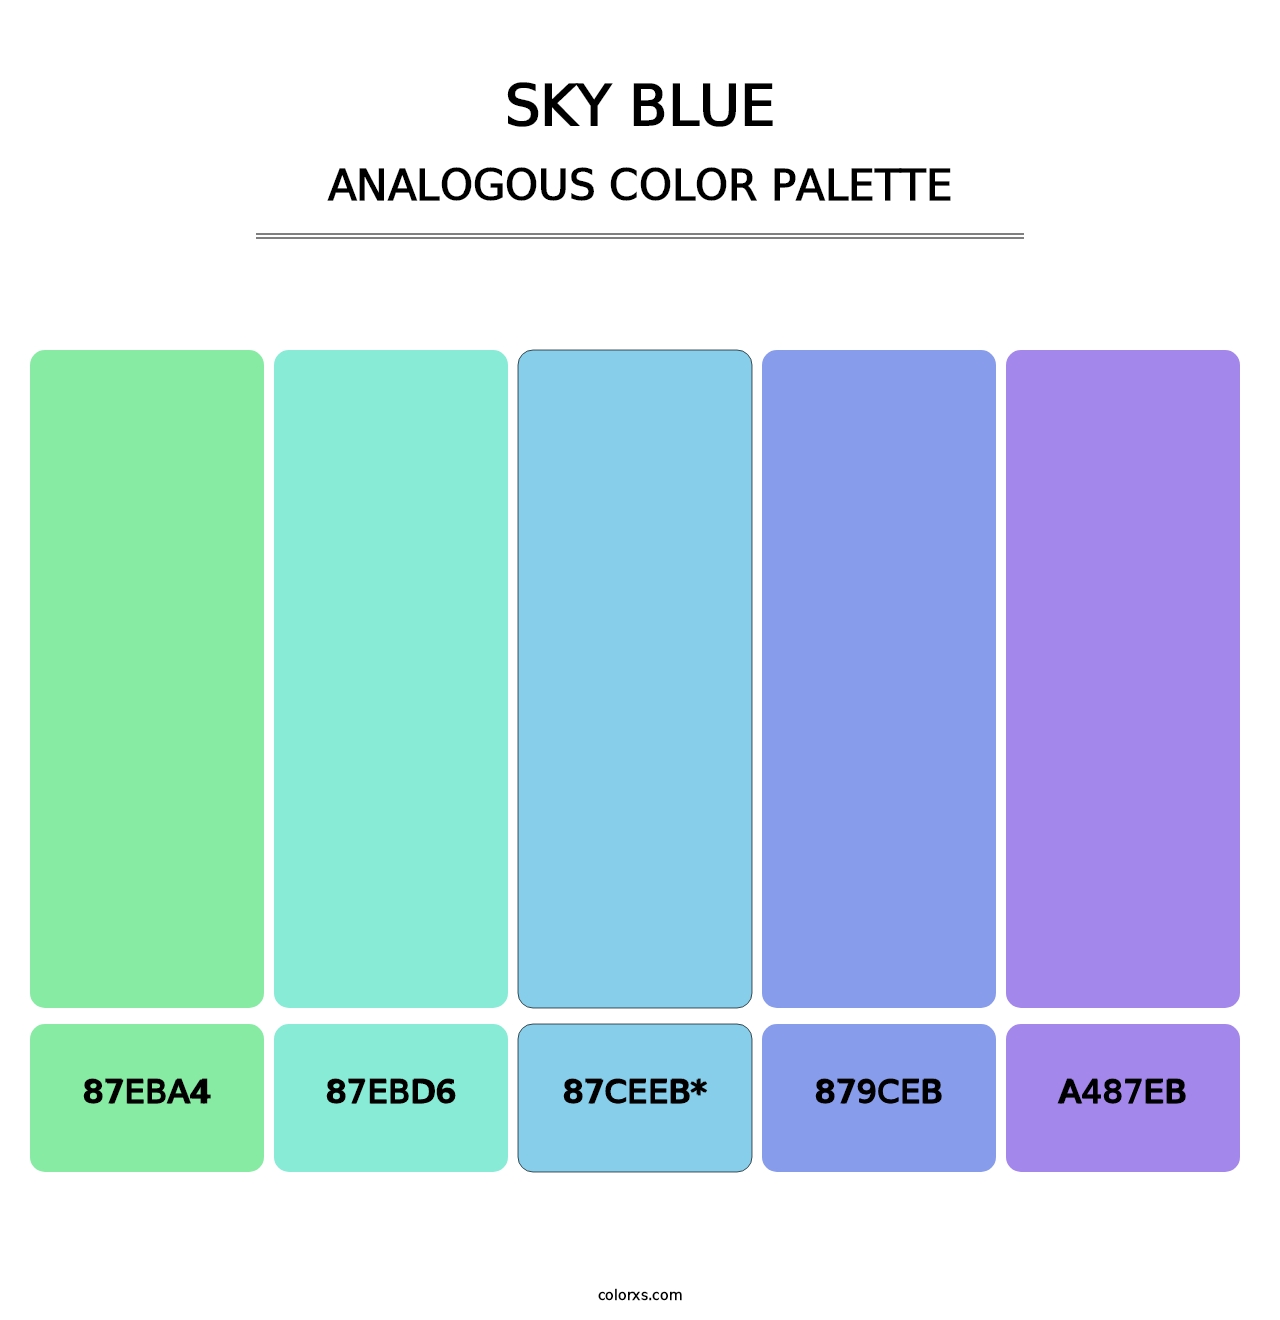 Sky blue - Analogous Color Palette